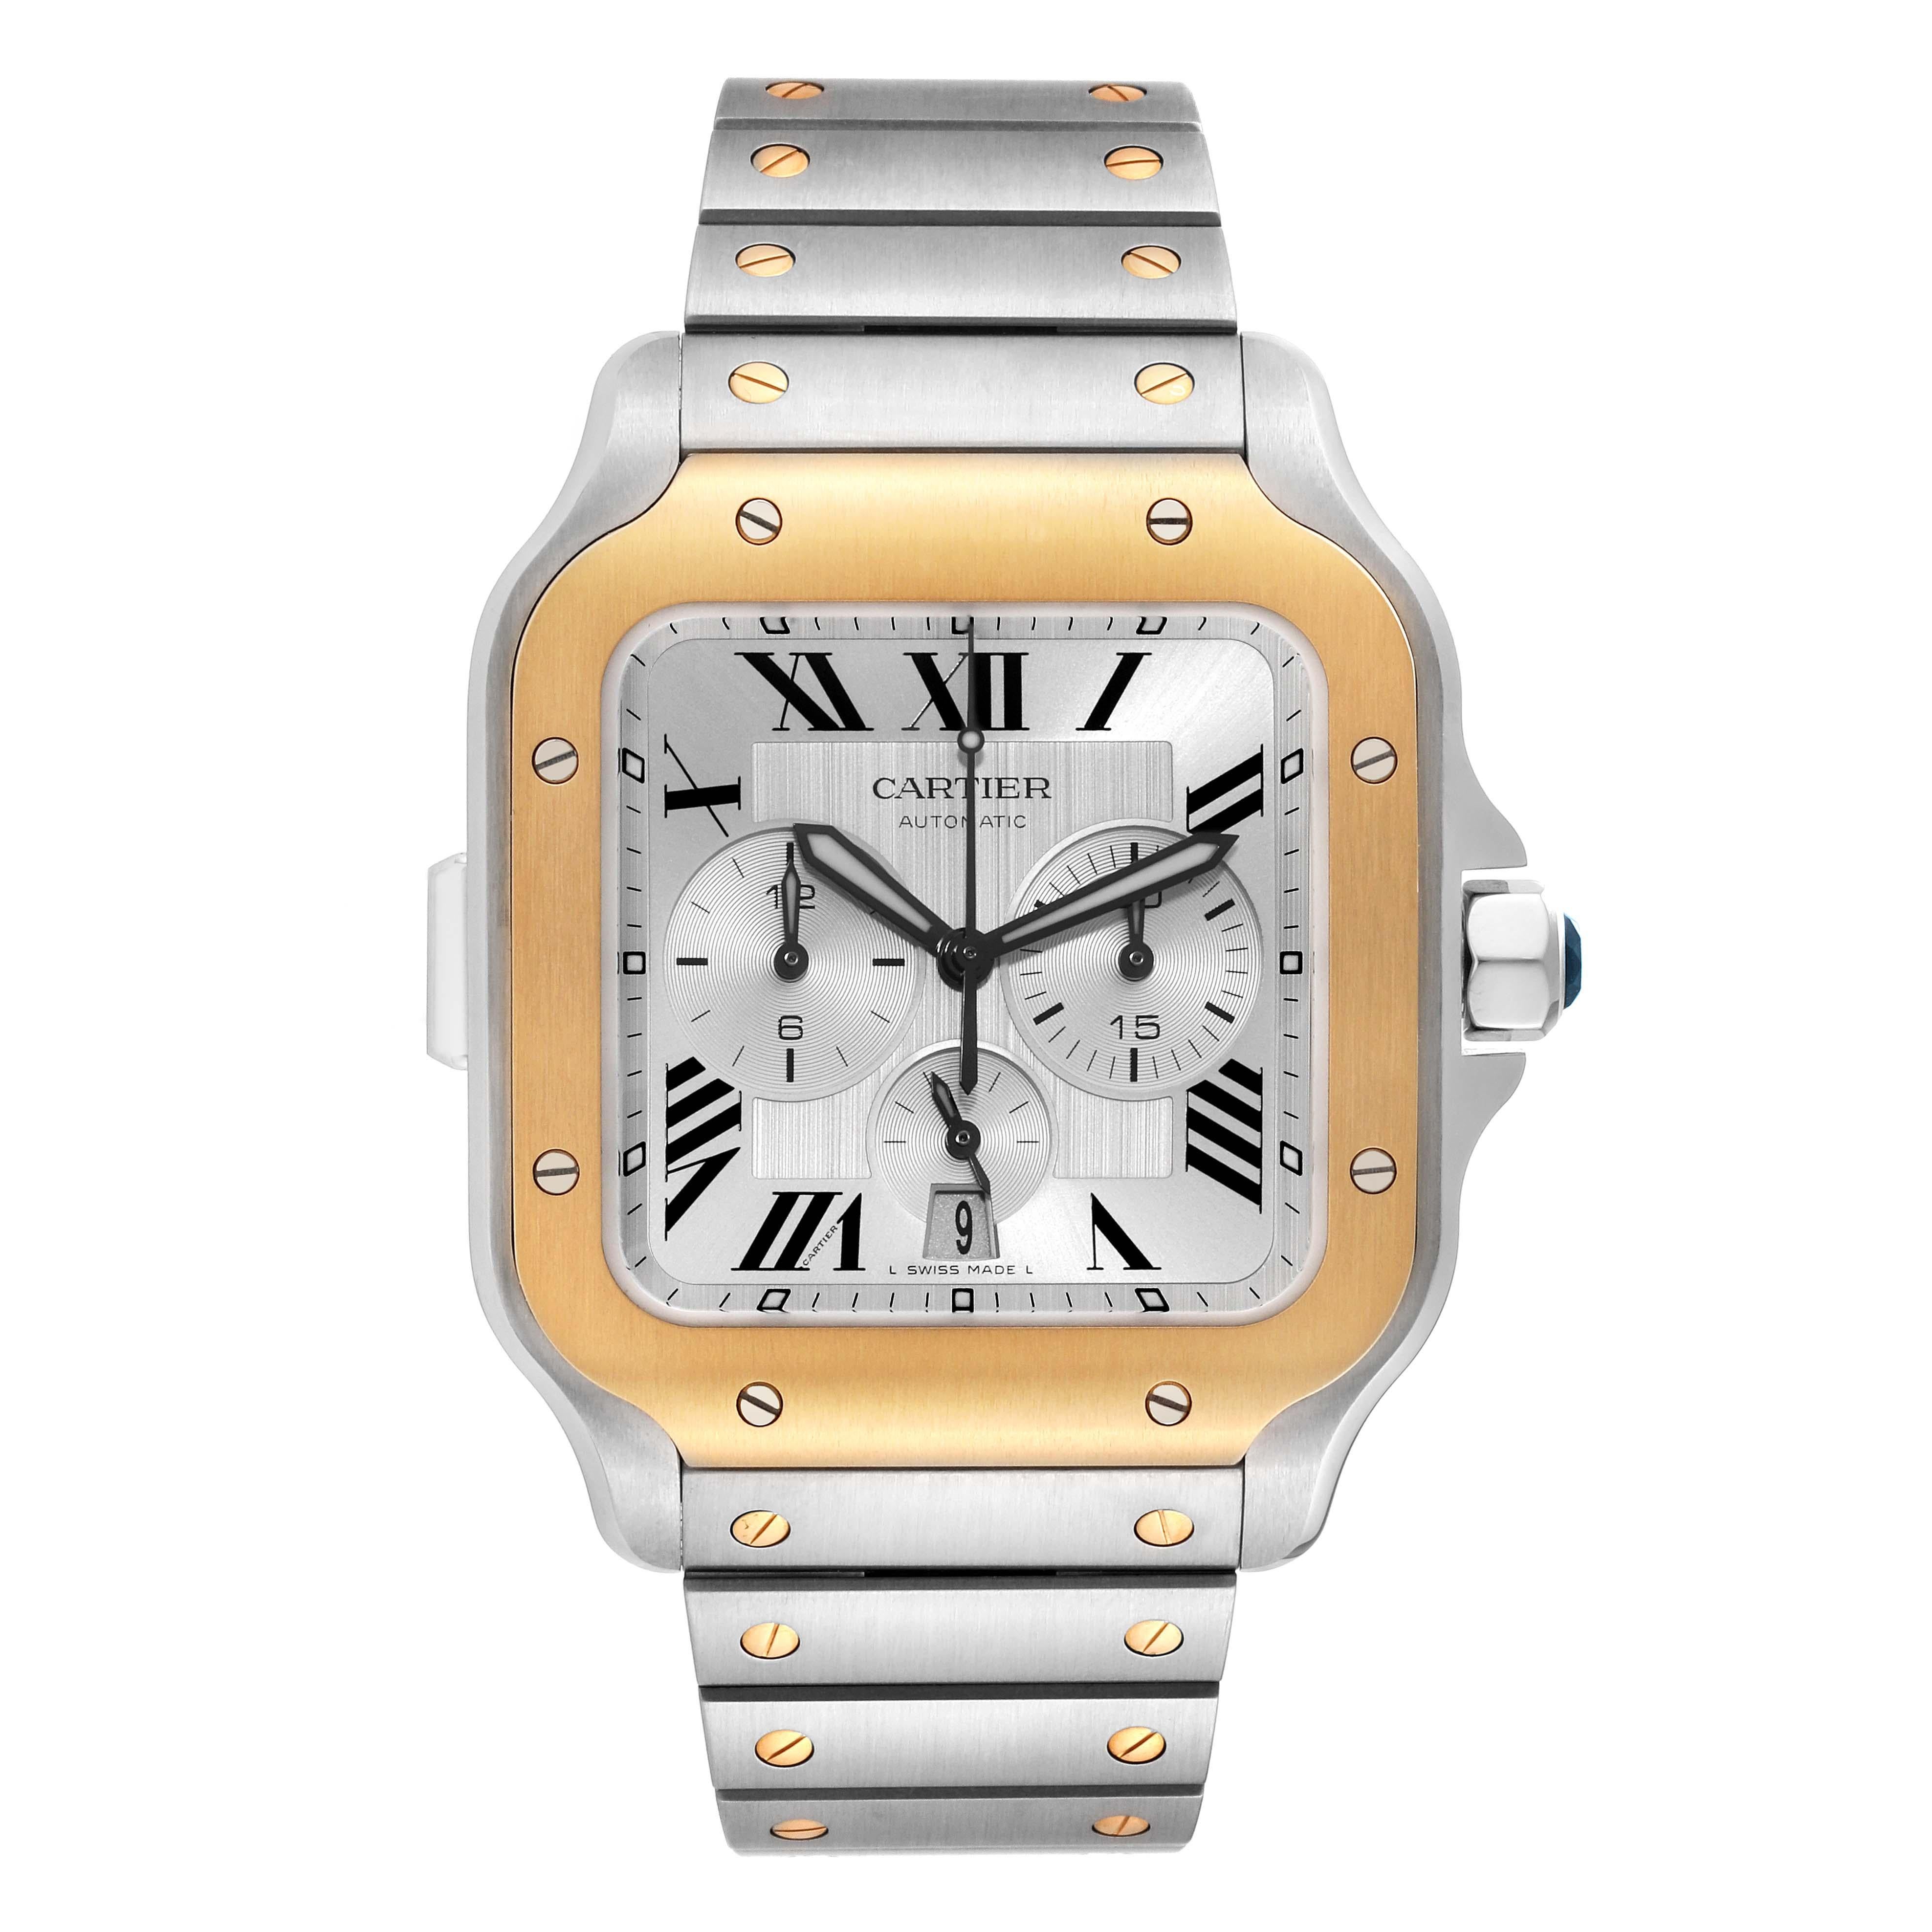 Cartier Santos XL Chronograph Steel Yellow Gold Mens Watch W2SA0008 Box Card. Mouvement chronographe à remontage automatique, calibre 1904 CH MC. Boîtier en acier inoxydable 44,9 mm x 51,3 mm. Épaisseur du boîtier : 12.4 mm. Couronne octogonale